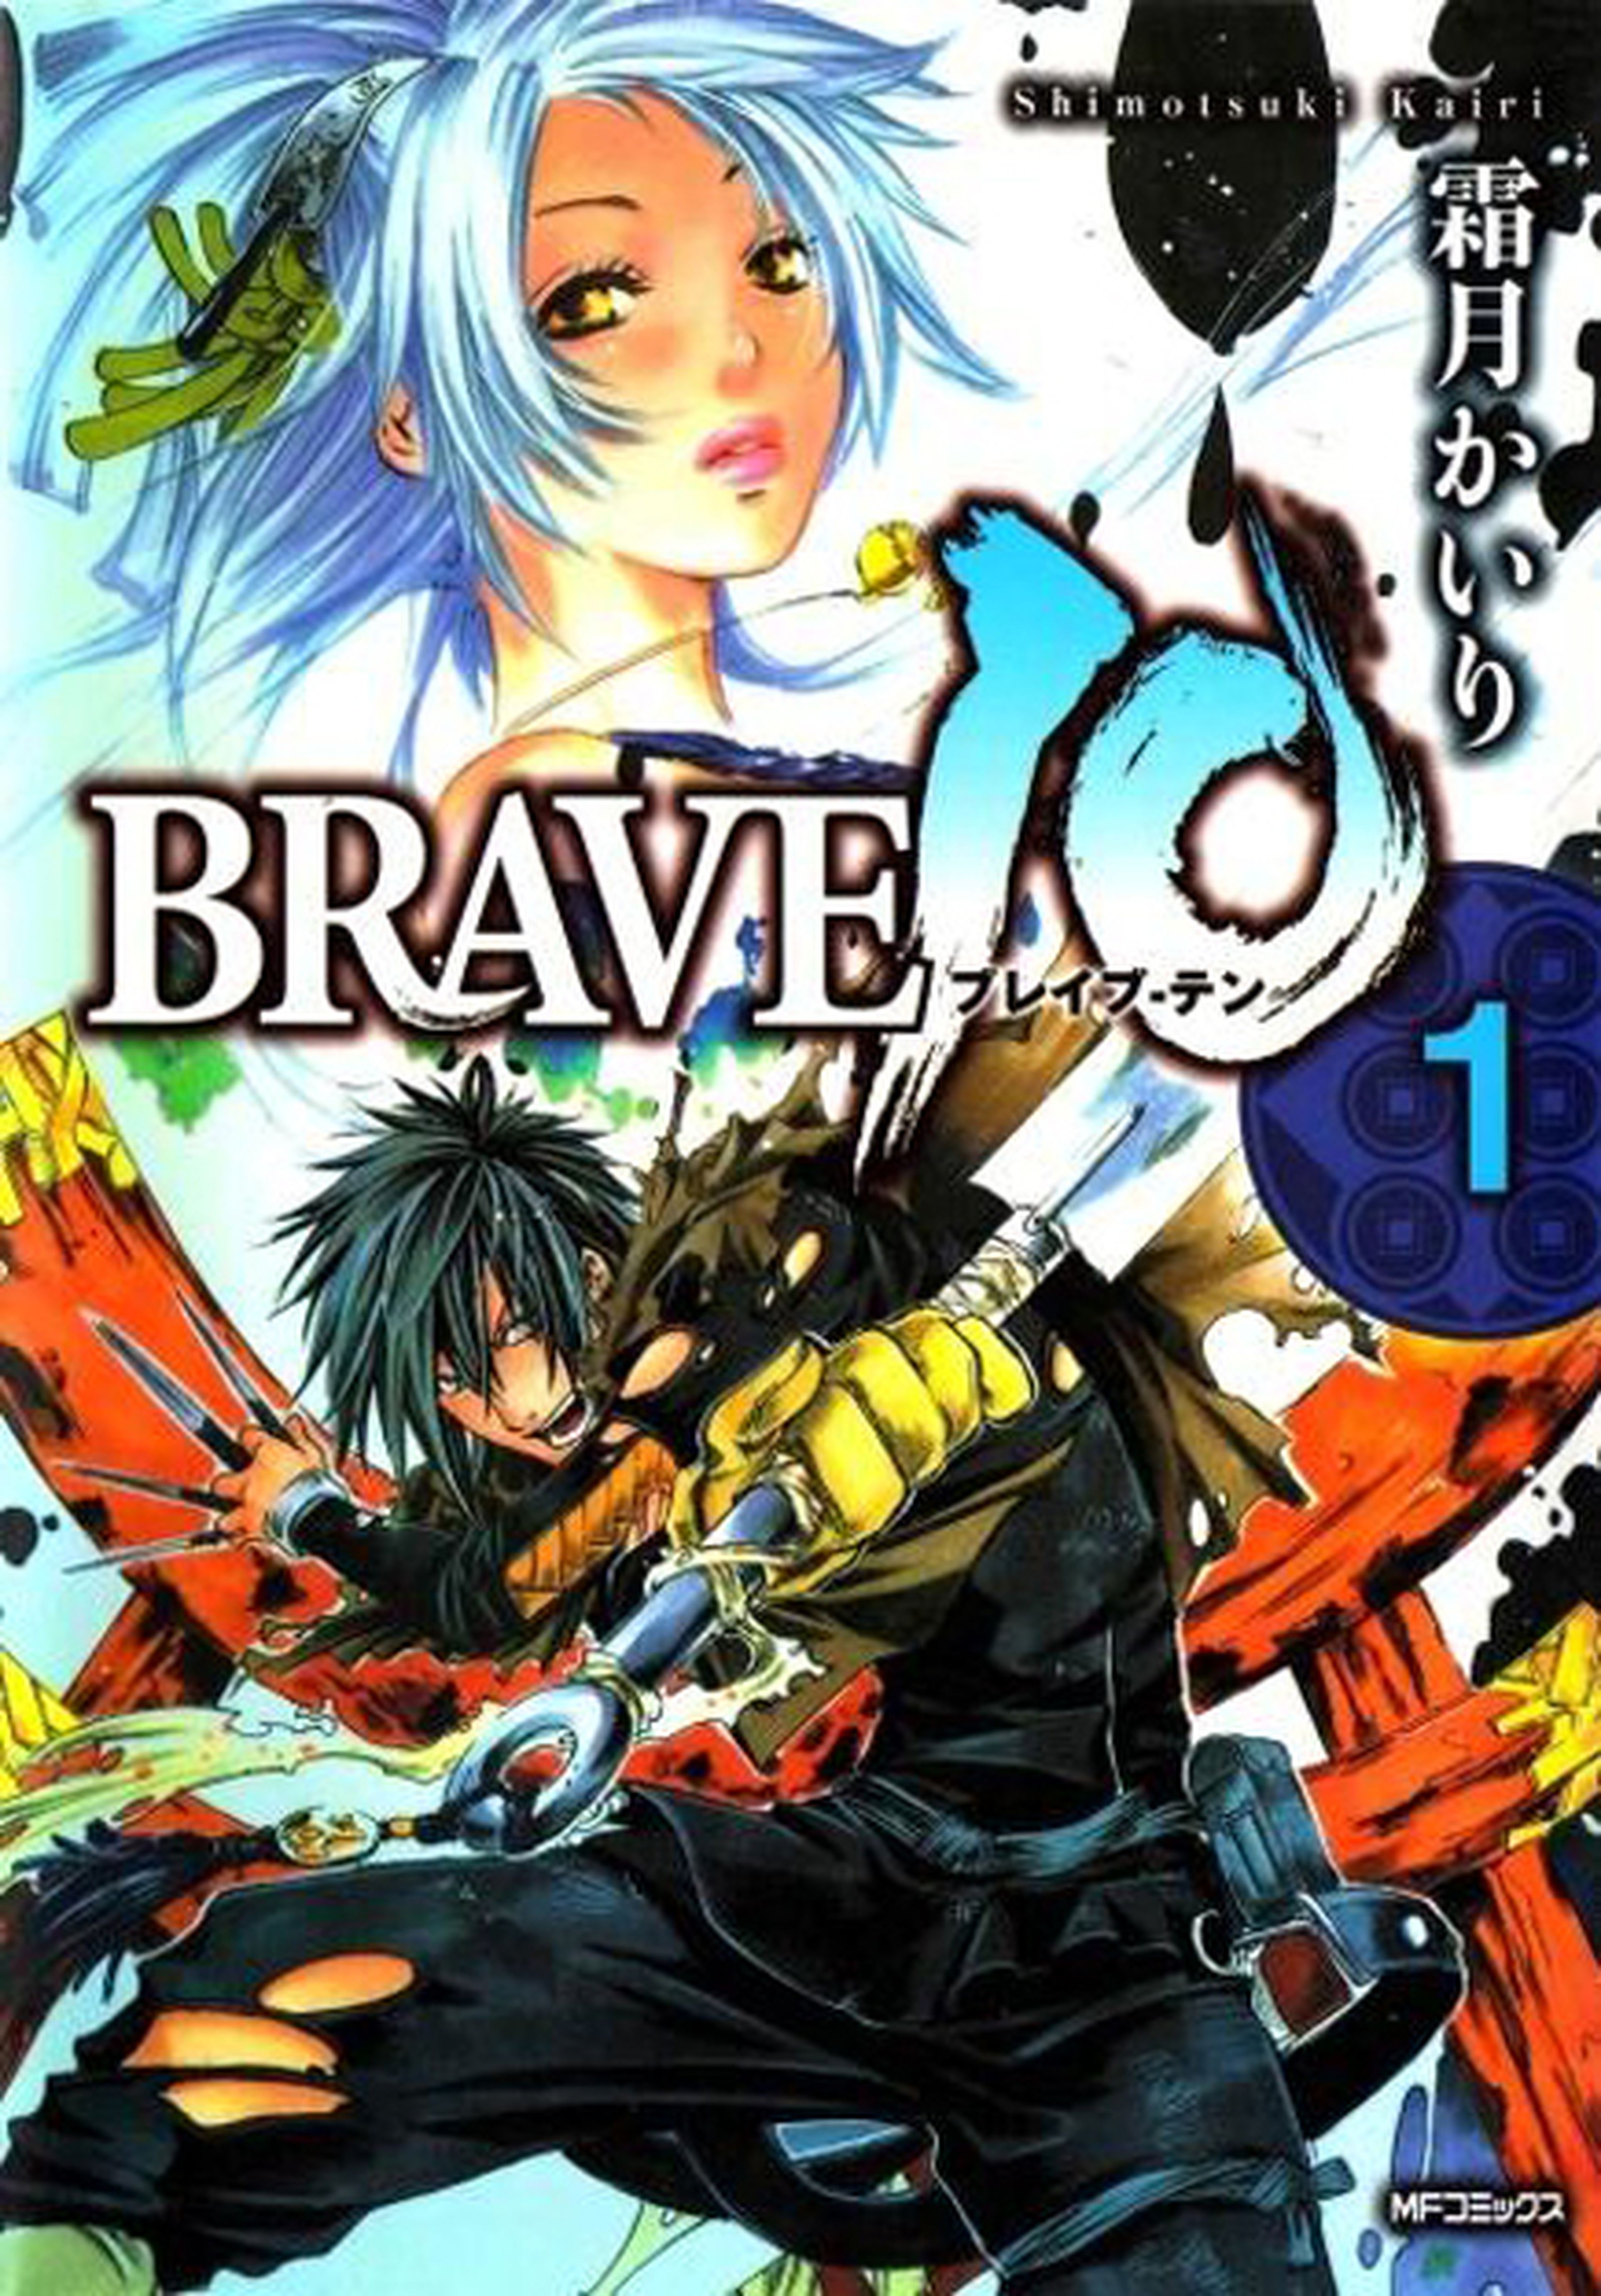 El manga Brave10 podría quedar inconcluso